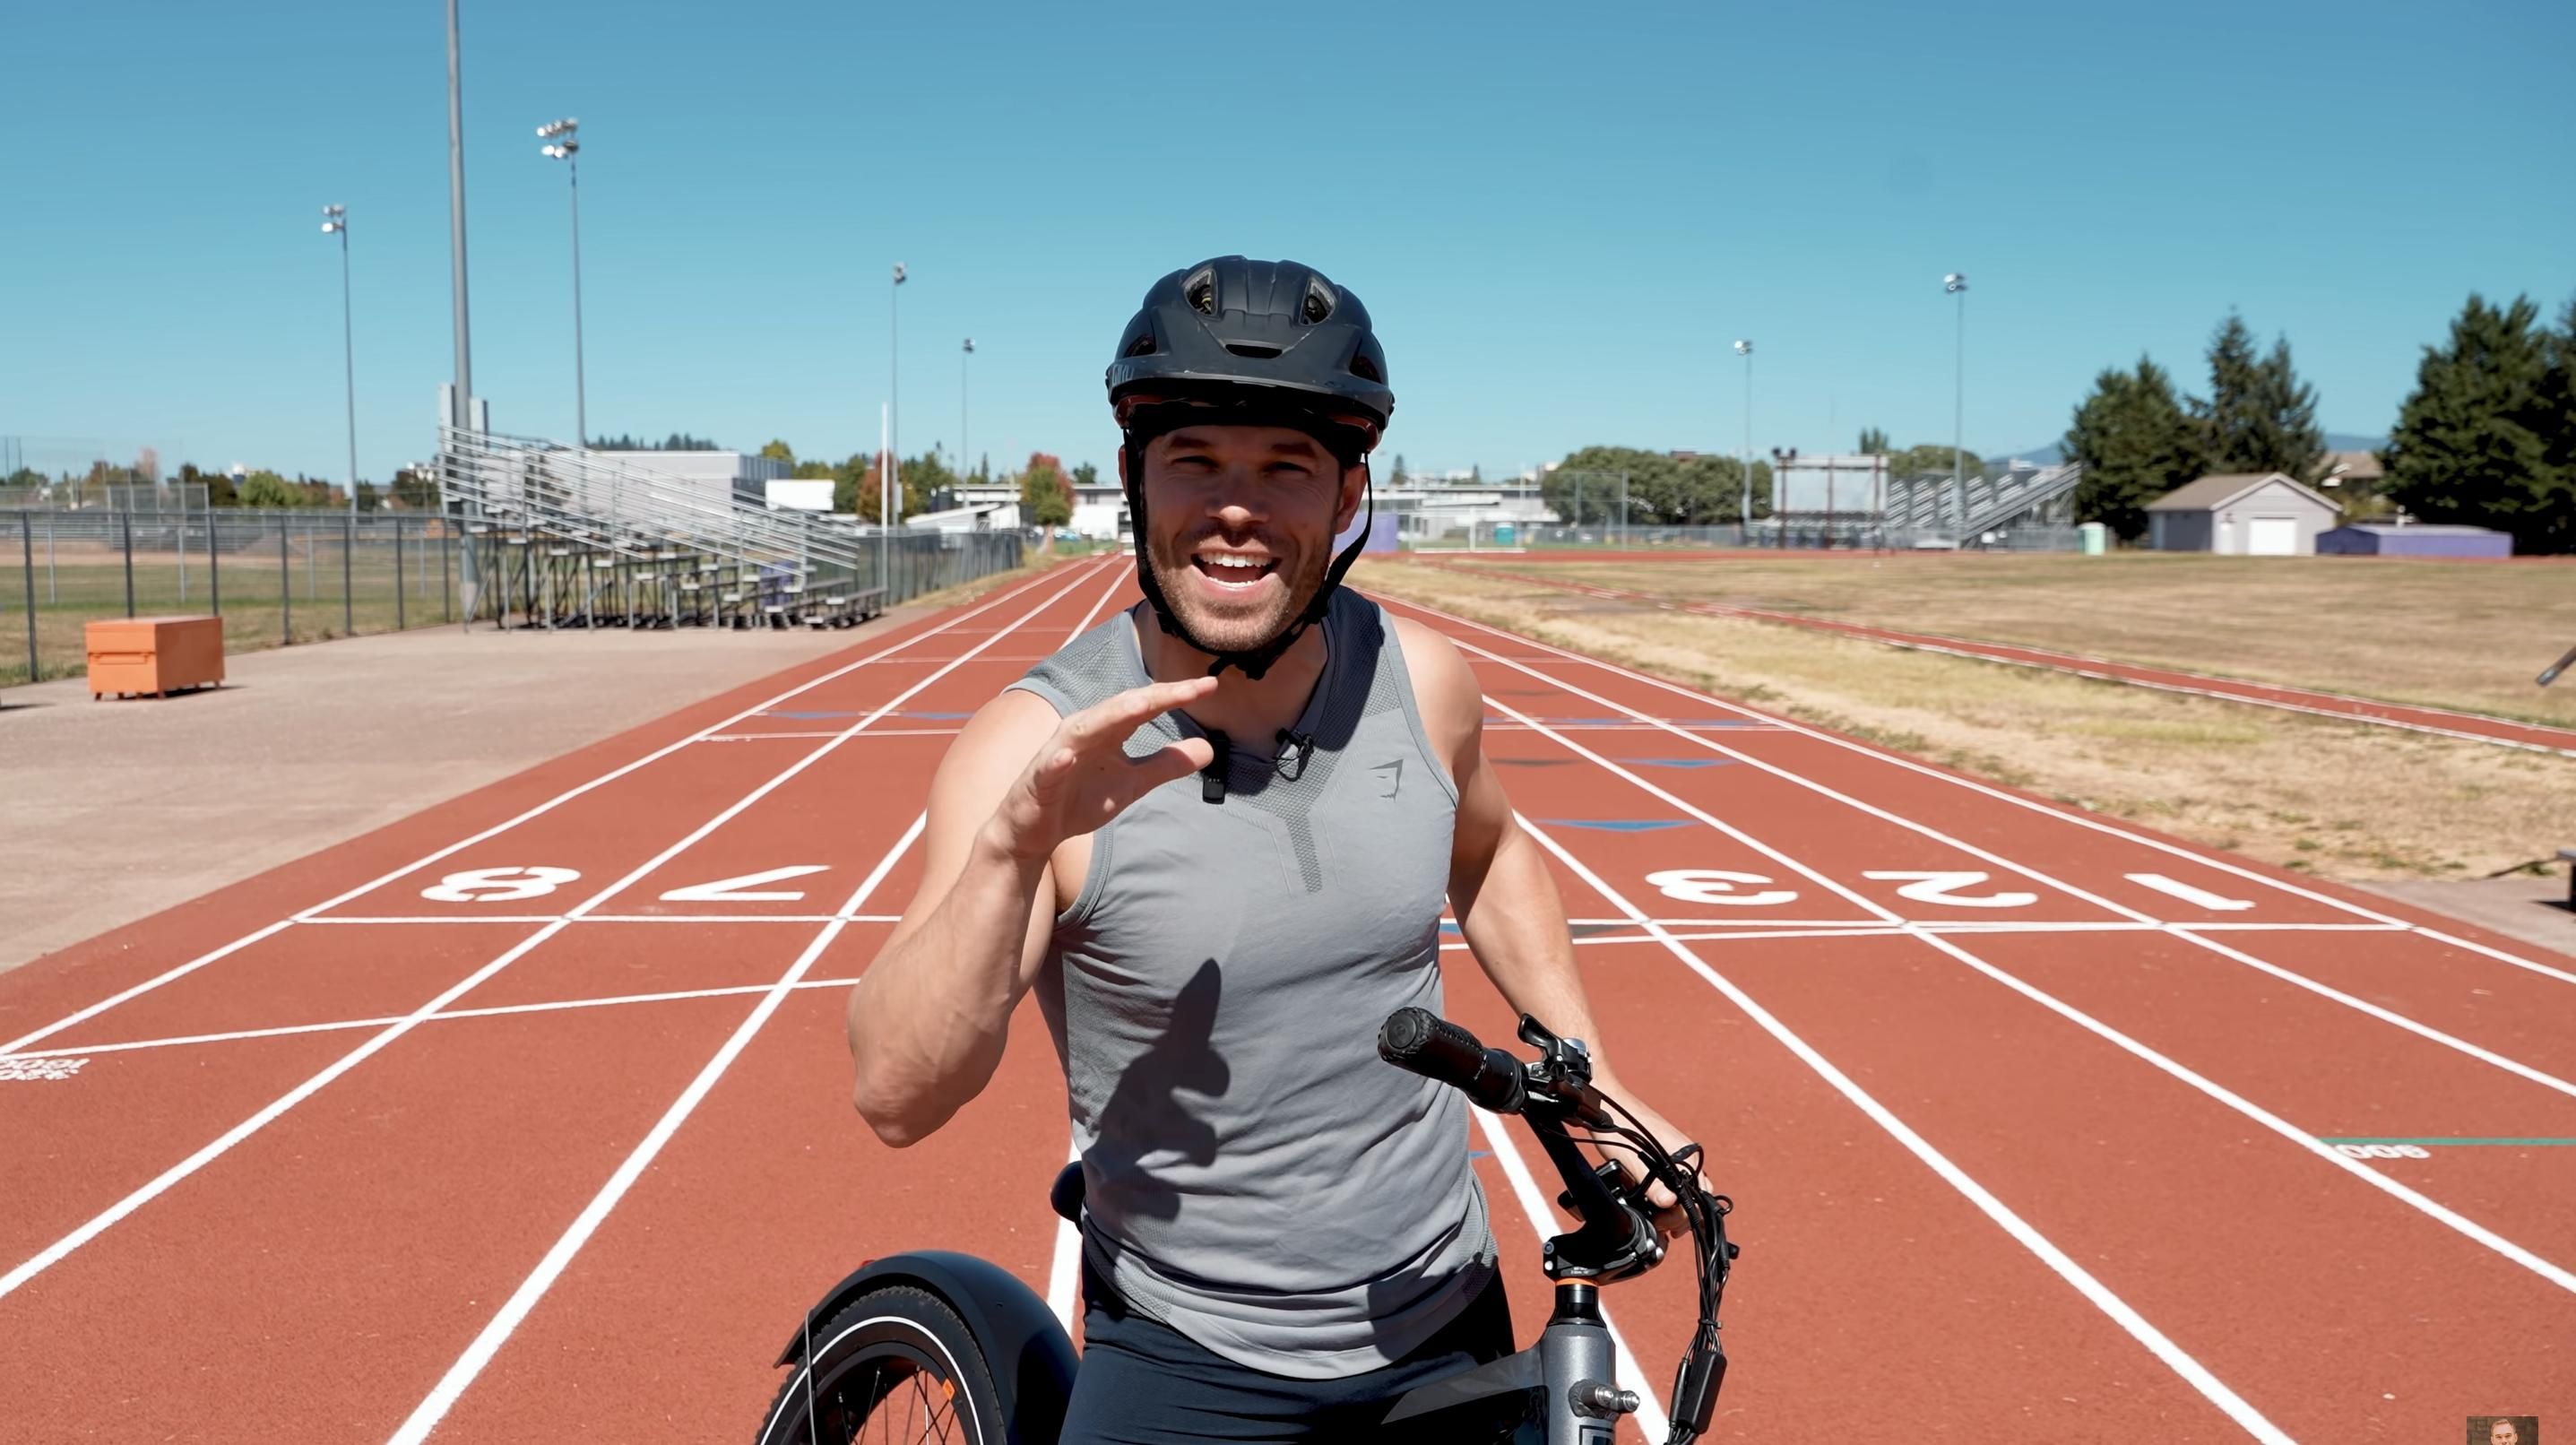 Сумеет ли олимпийский бегун обойти электровелосипед: эпическая дуэль, которая сделает твой день - Men